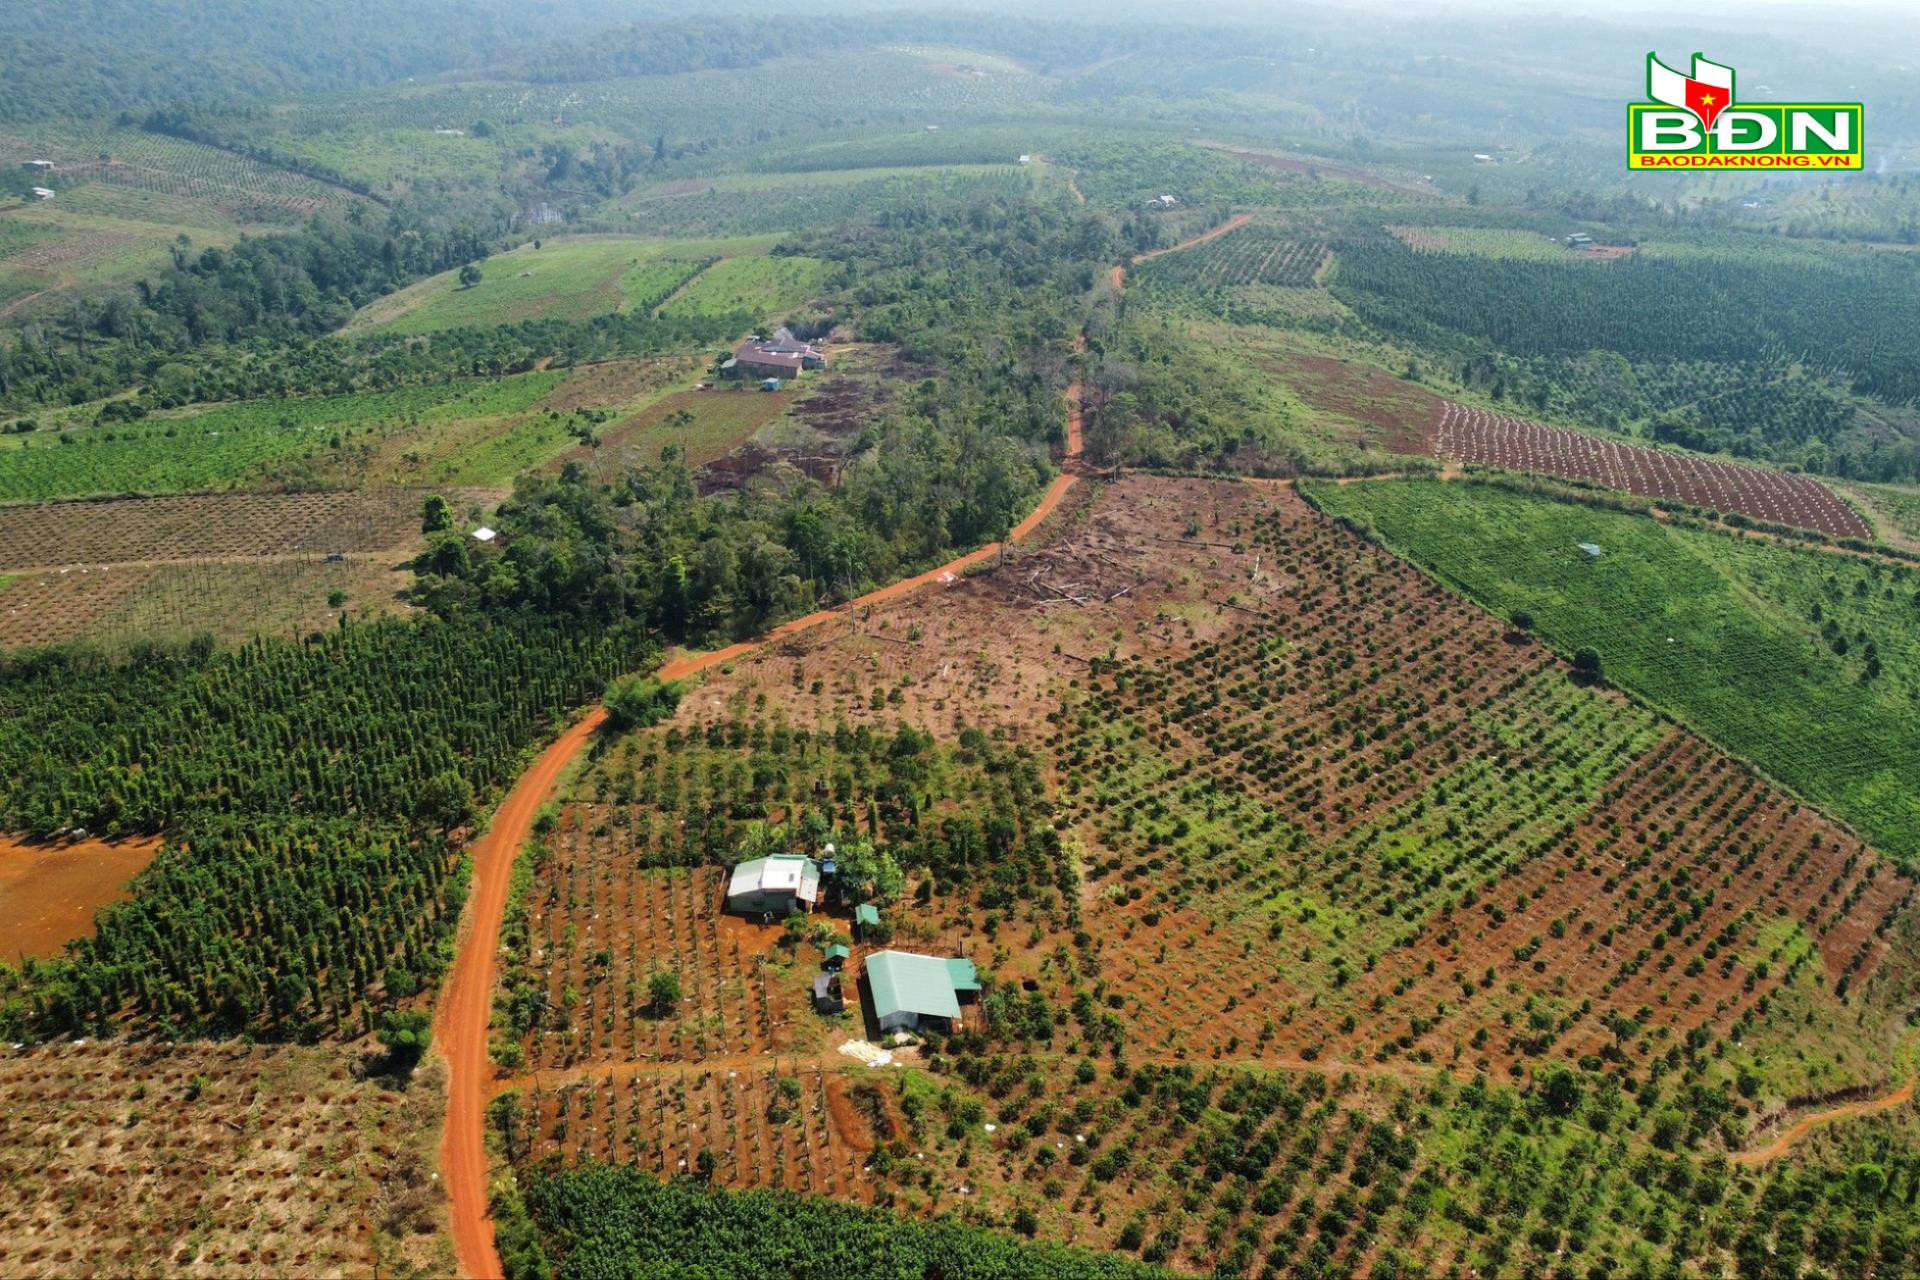 Mối lo cho nông sản Đắk Nông khi thực hiện việc ‘cấm cửa’ với sản phẩm liên quan đến phá rừng - Ảnh 1.